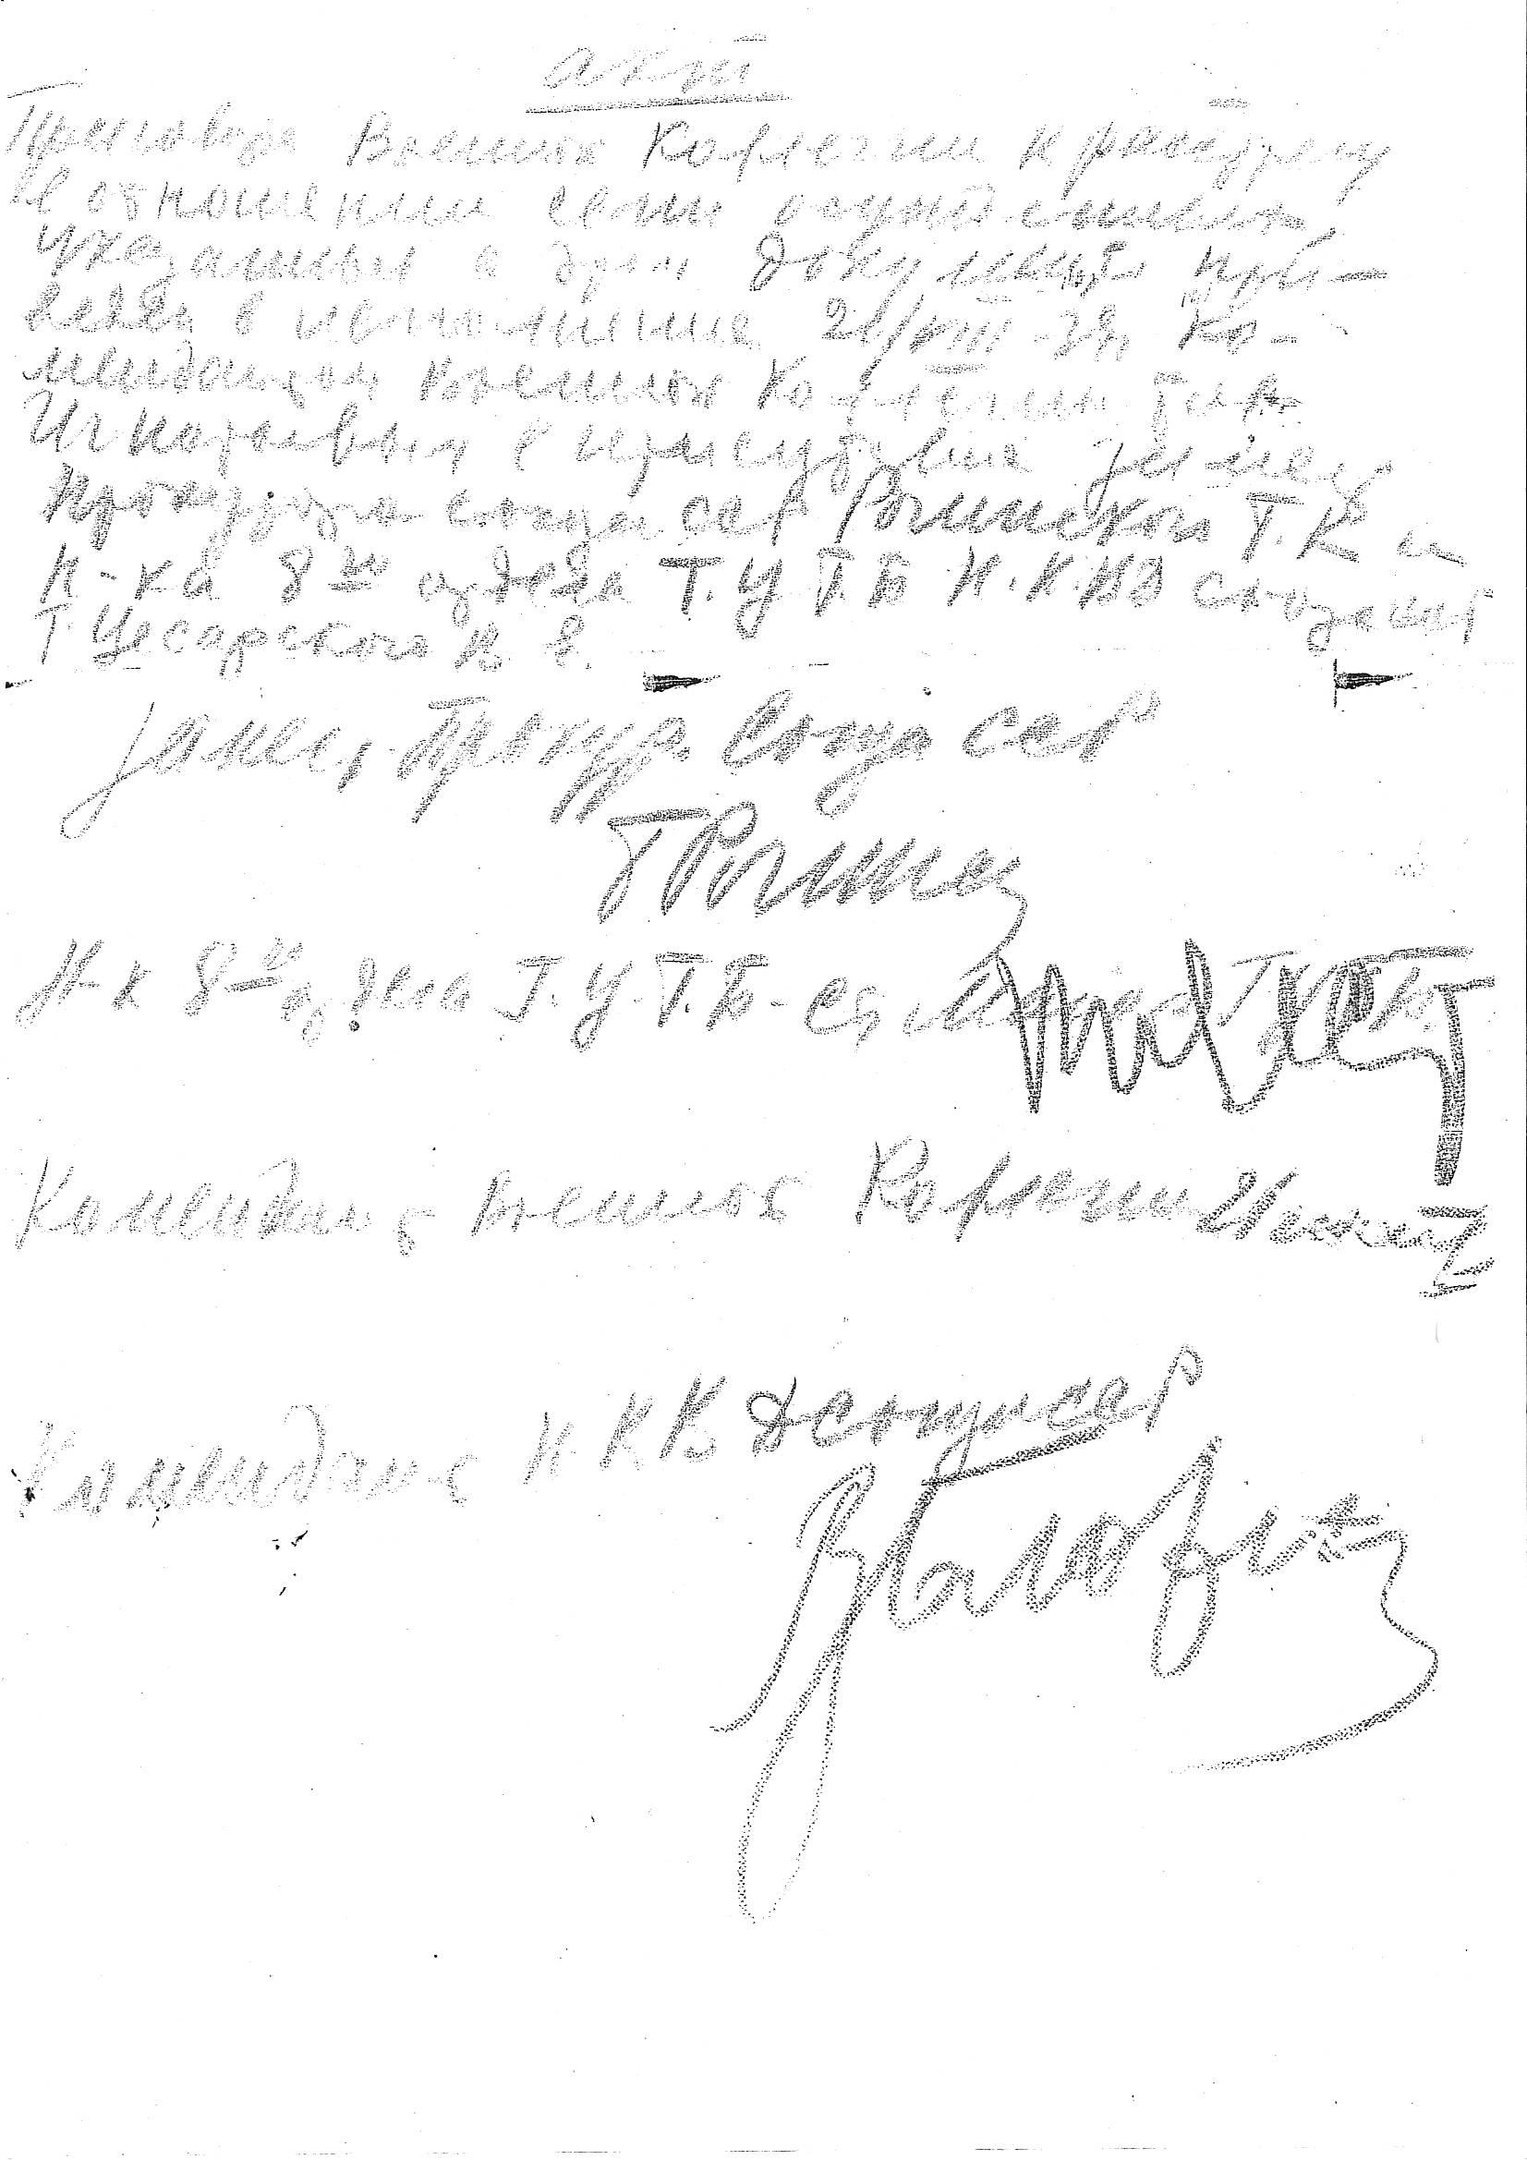 Акт о расстреле 7 осужденных в ОП 21 августа 1937 г. (подписи Г. К. Рогинского, В. Е. Цесарского, И. Г. Игнатьева, В. М. Блохина)